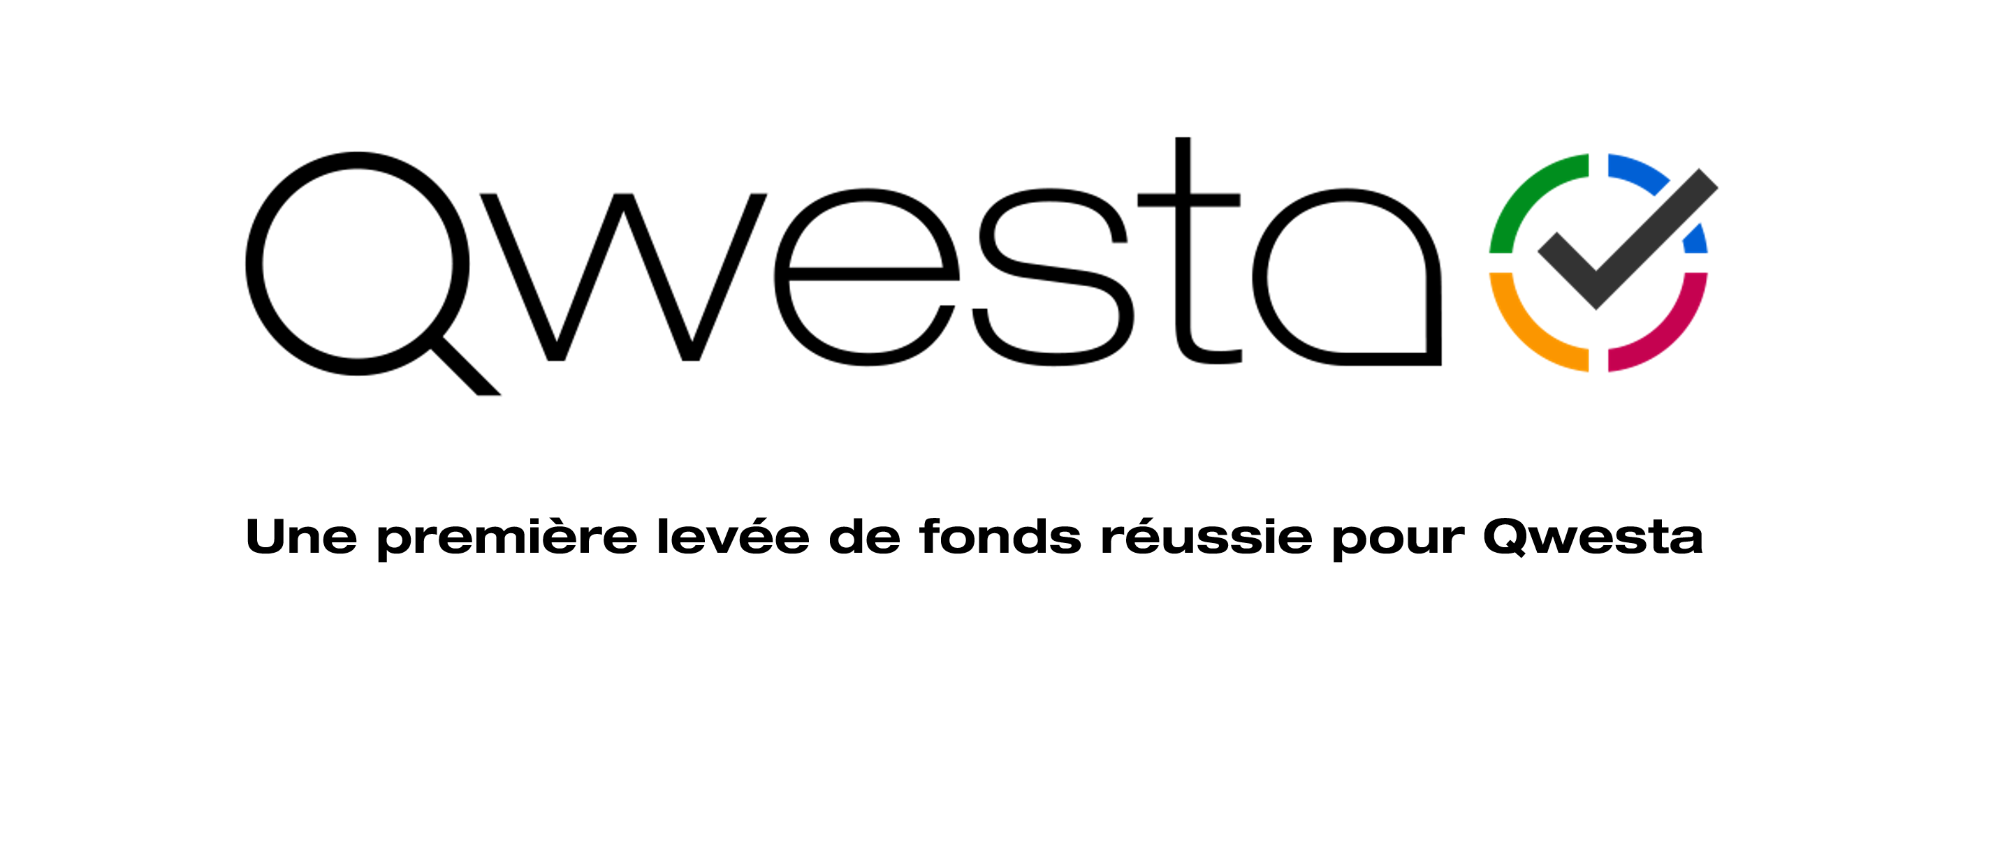 Une première levée de fonds réussie pour Qwesta